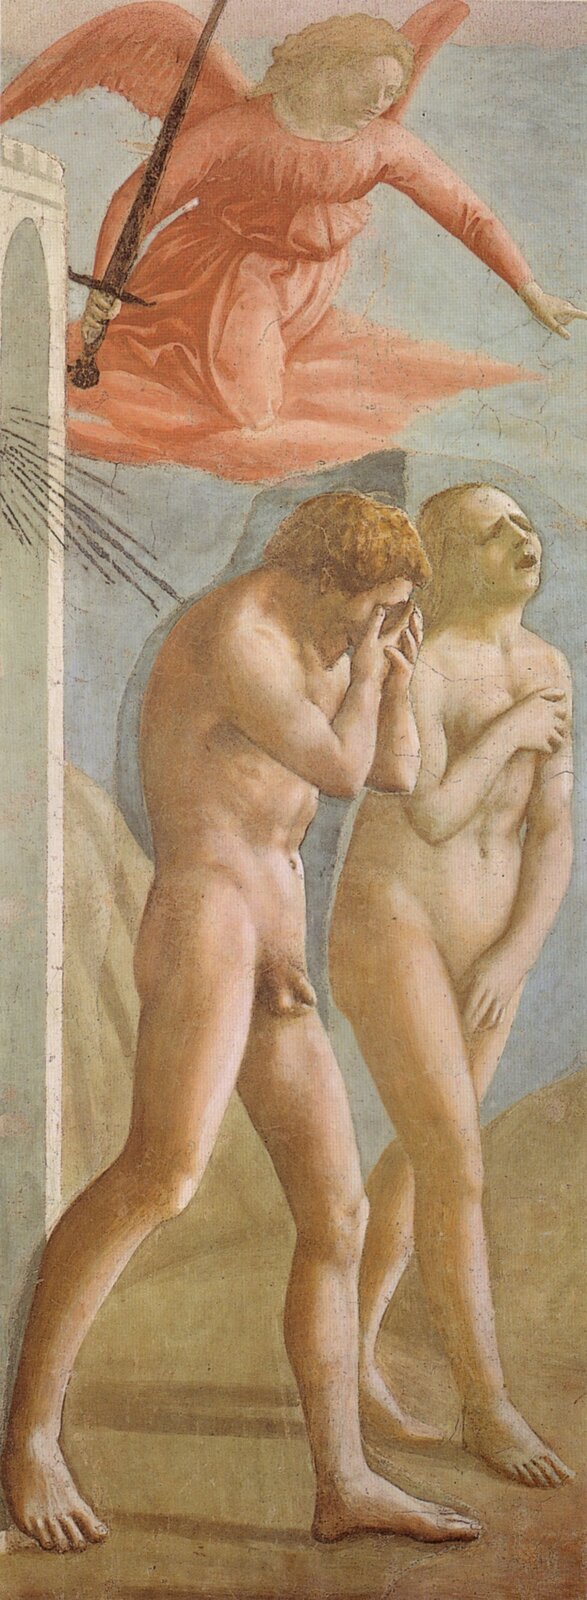 Ilustracja przedstawia obraz Masaccia „Wygnanie z Raju”. Na obrazie widzimy dwie nagie postacie - kobietę oraz mężczyznę. Mężczyzna zakrywa twarz ręką. Kobieta ma zrozpaczony wyraz twarzy. Za postaciami, w górze, widoczny jest anioł w pomarańczowej sukni i z mieczem w ręku.